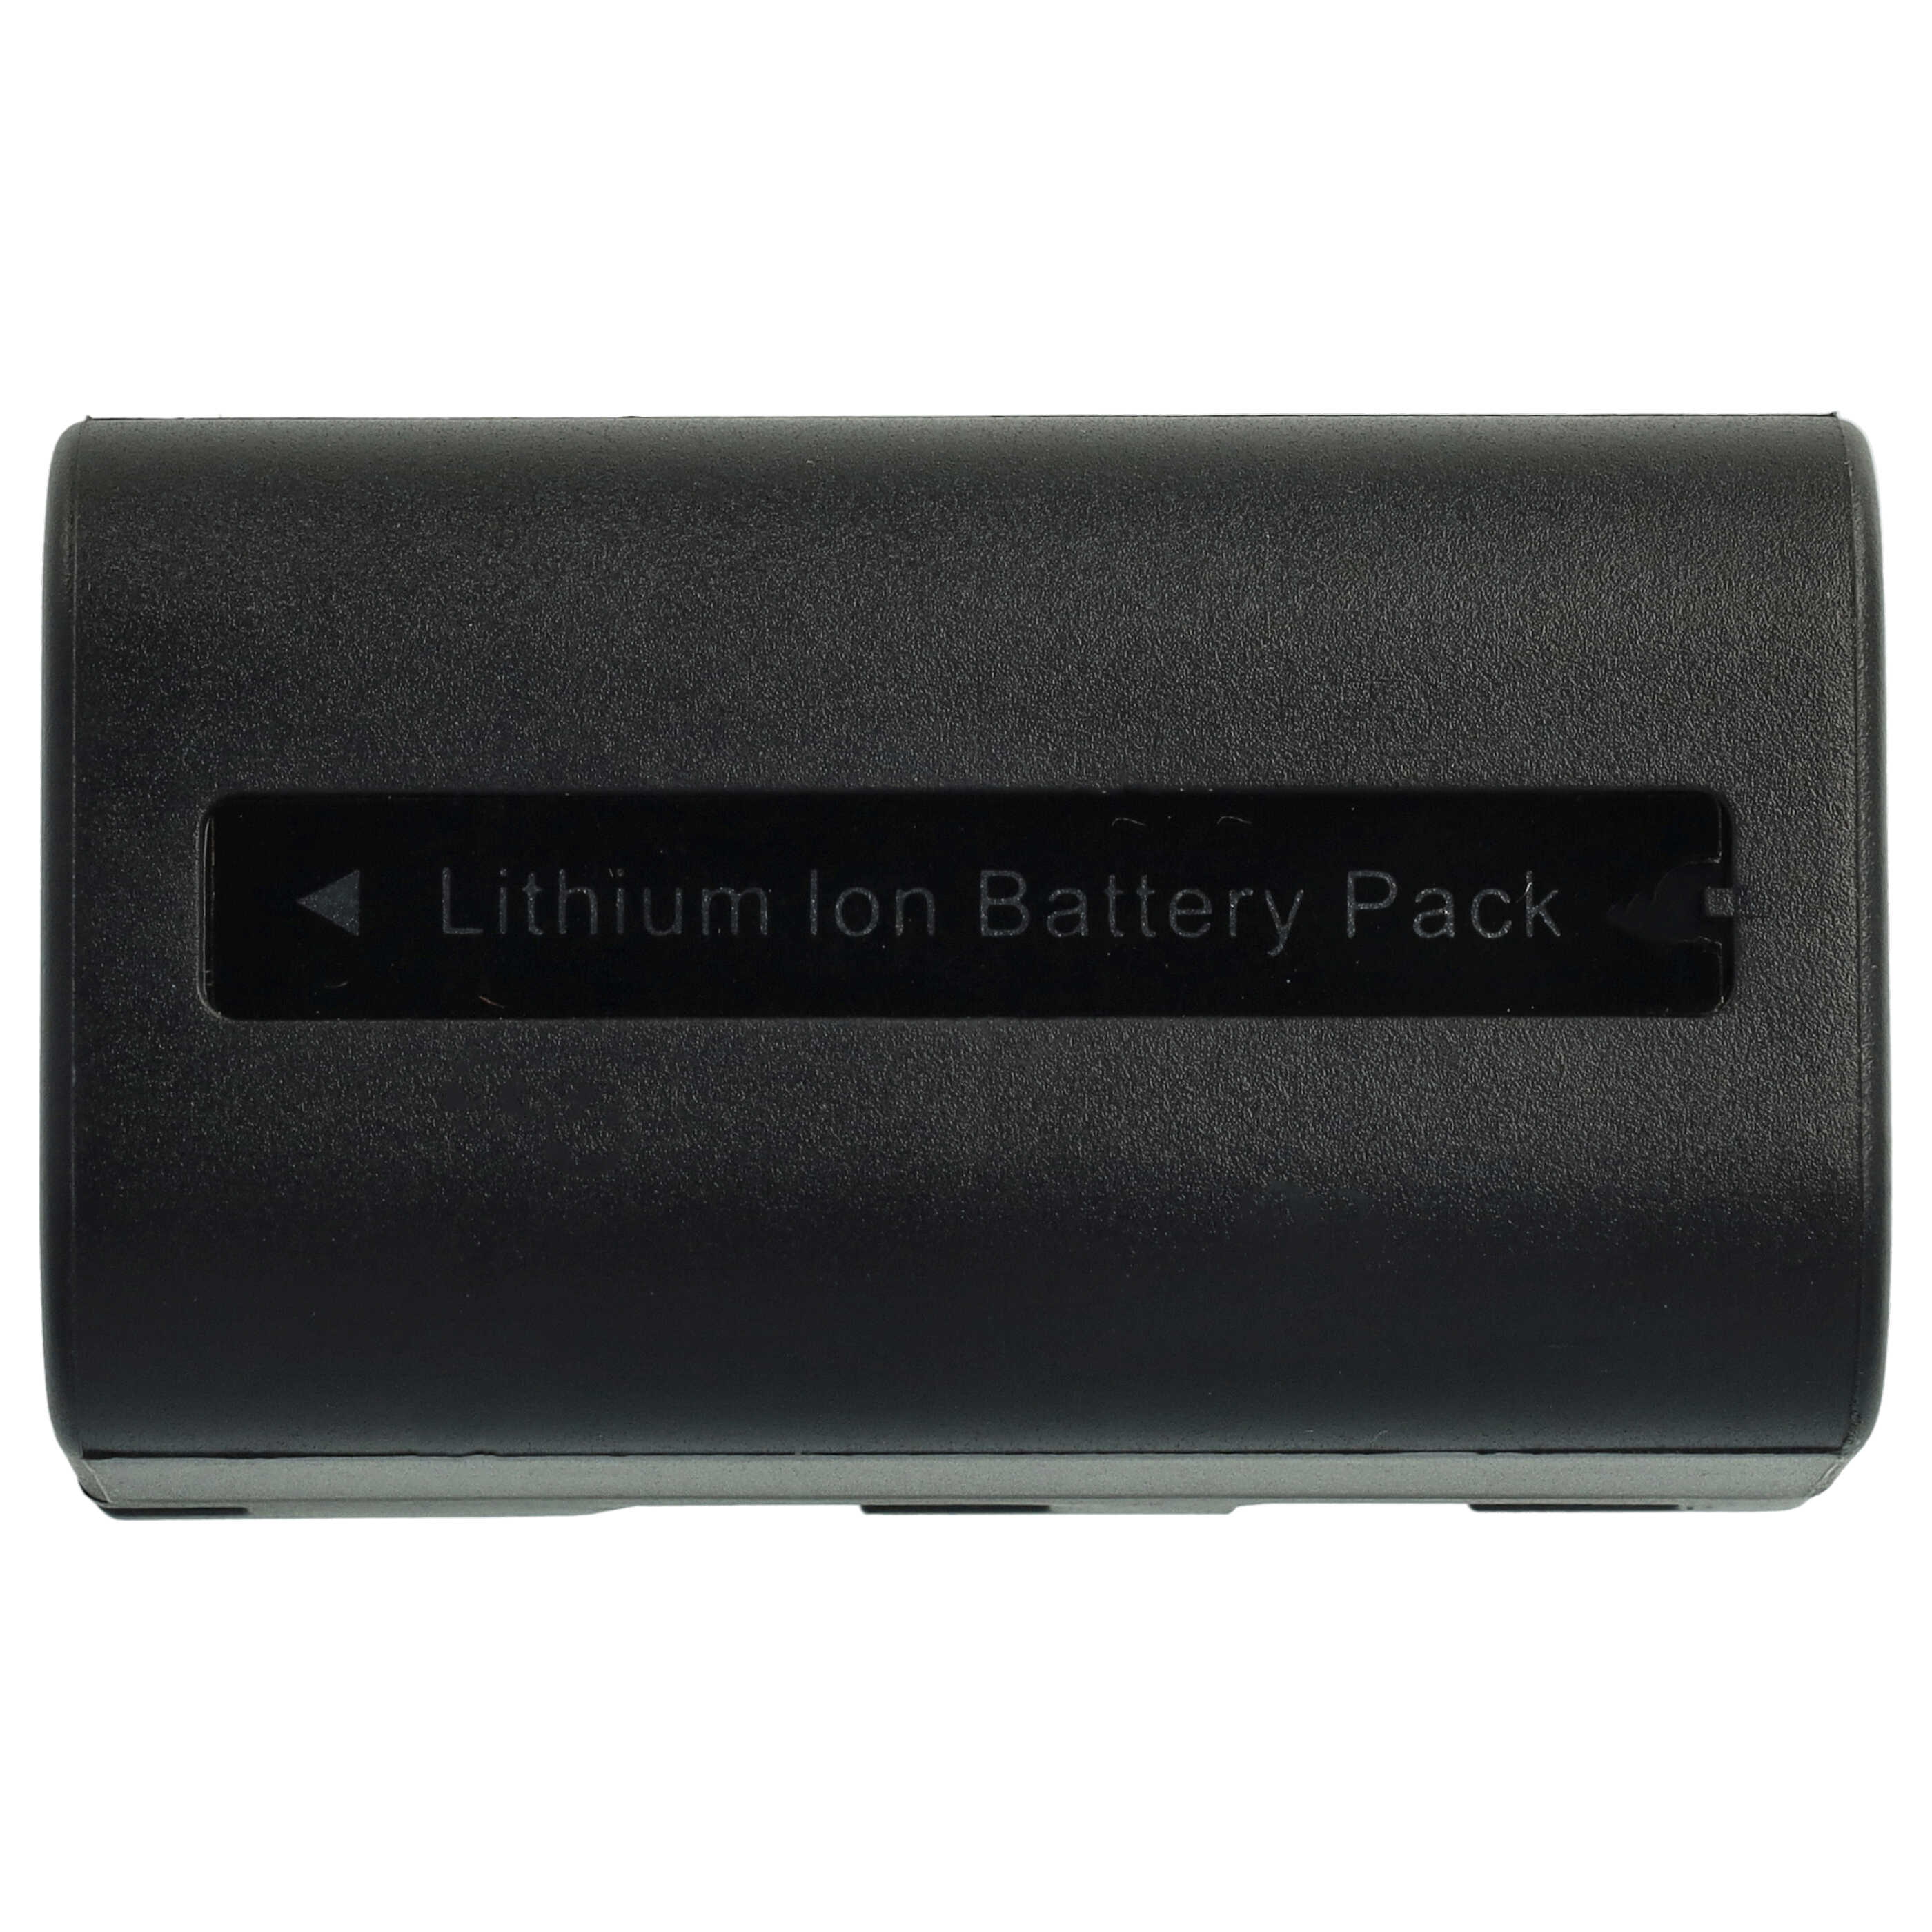 3x Batería reemplaza Samsung SB-LSM80, SB-LSM320, SB-LSM160 para cámara Samsung - 1640 mAh 7,2 V Li-Ion